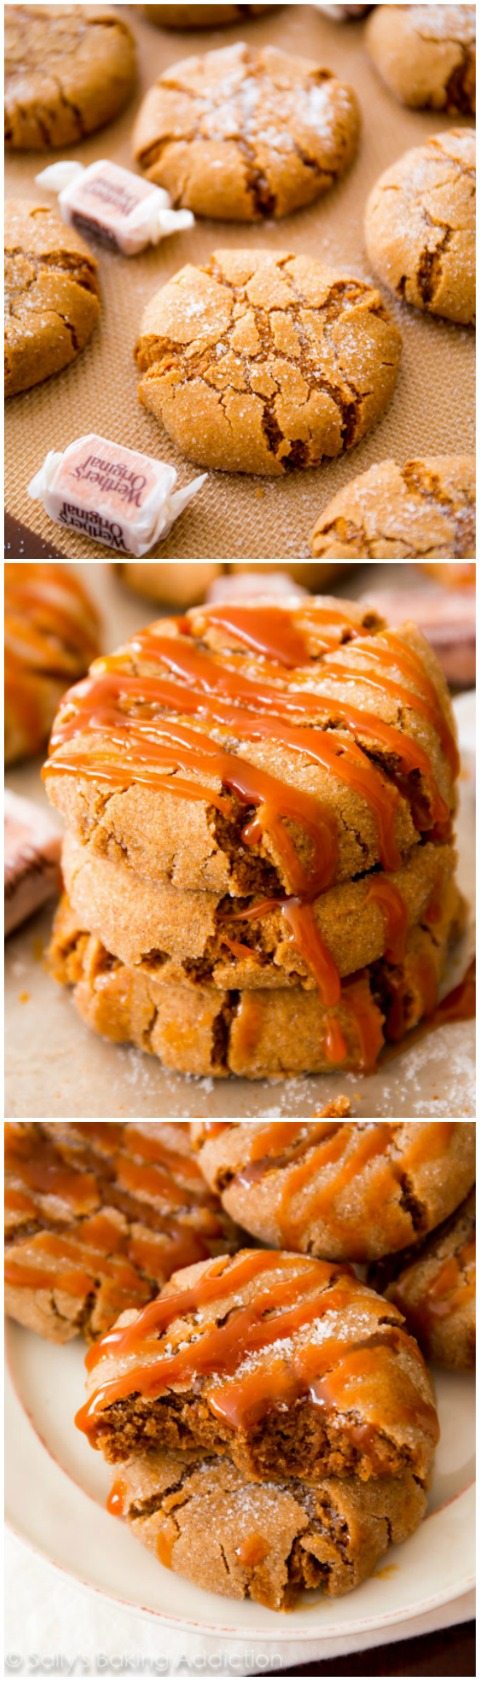 La mélasse au four croustille des biscuits avec un généreux filet de caramel sur le dessus. Un biscuit des fêtes plein de saveurs et d'épices!